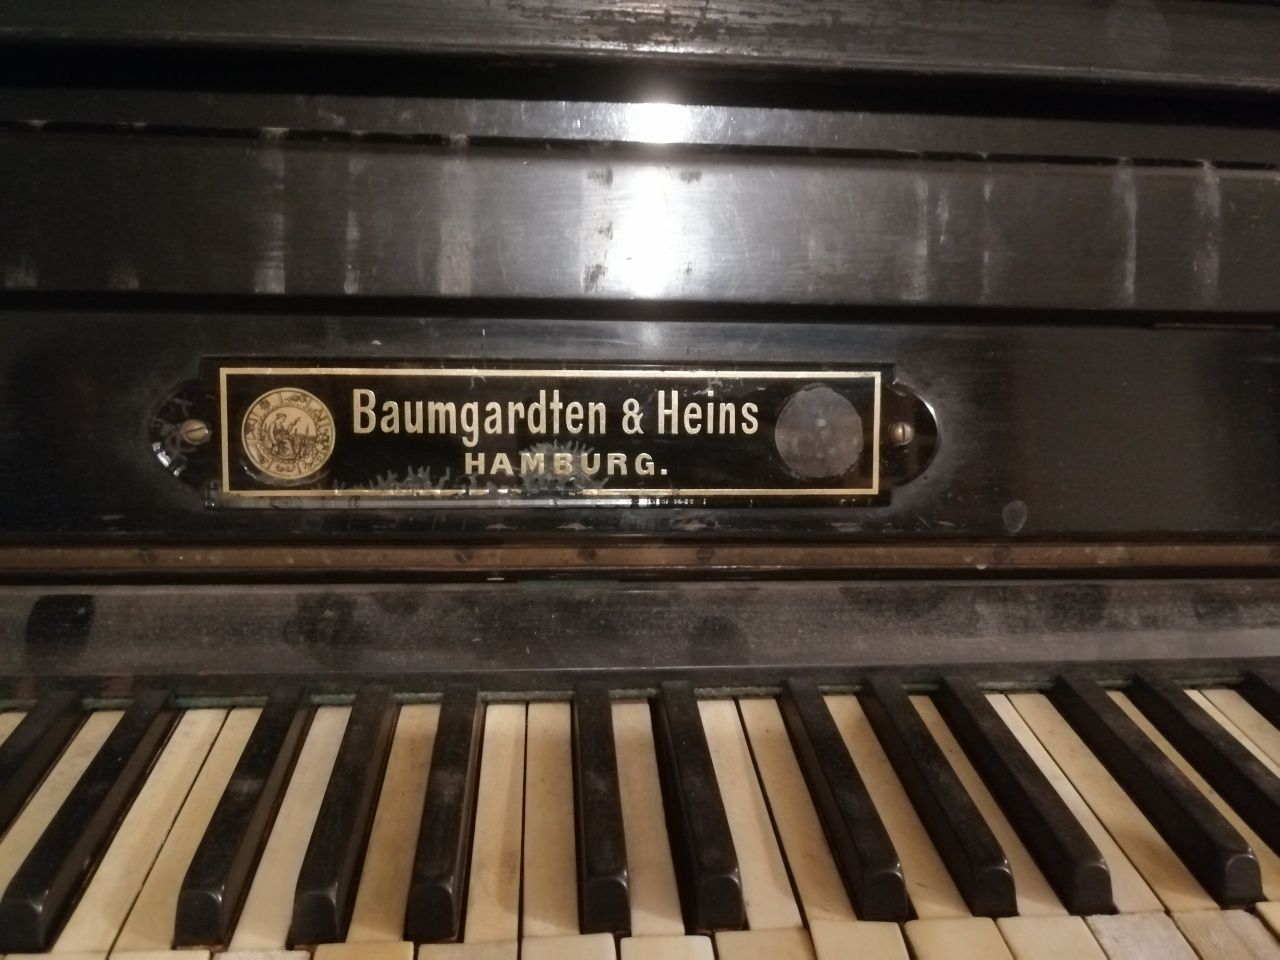 Pianino Baumgardten & Heins Hamburg